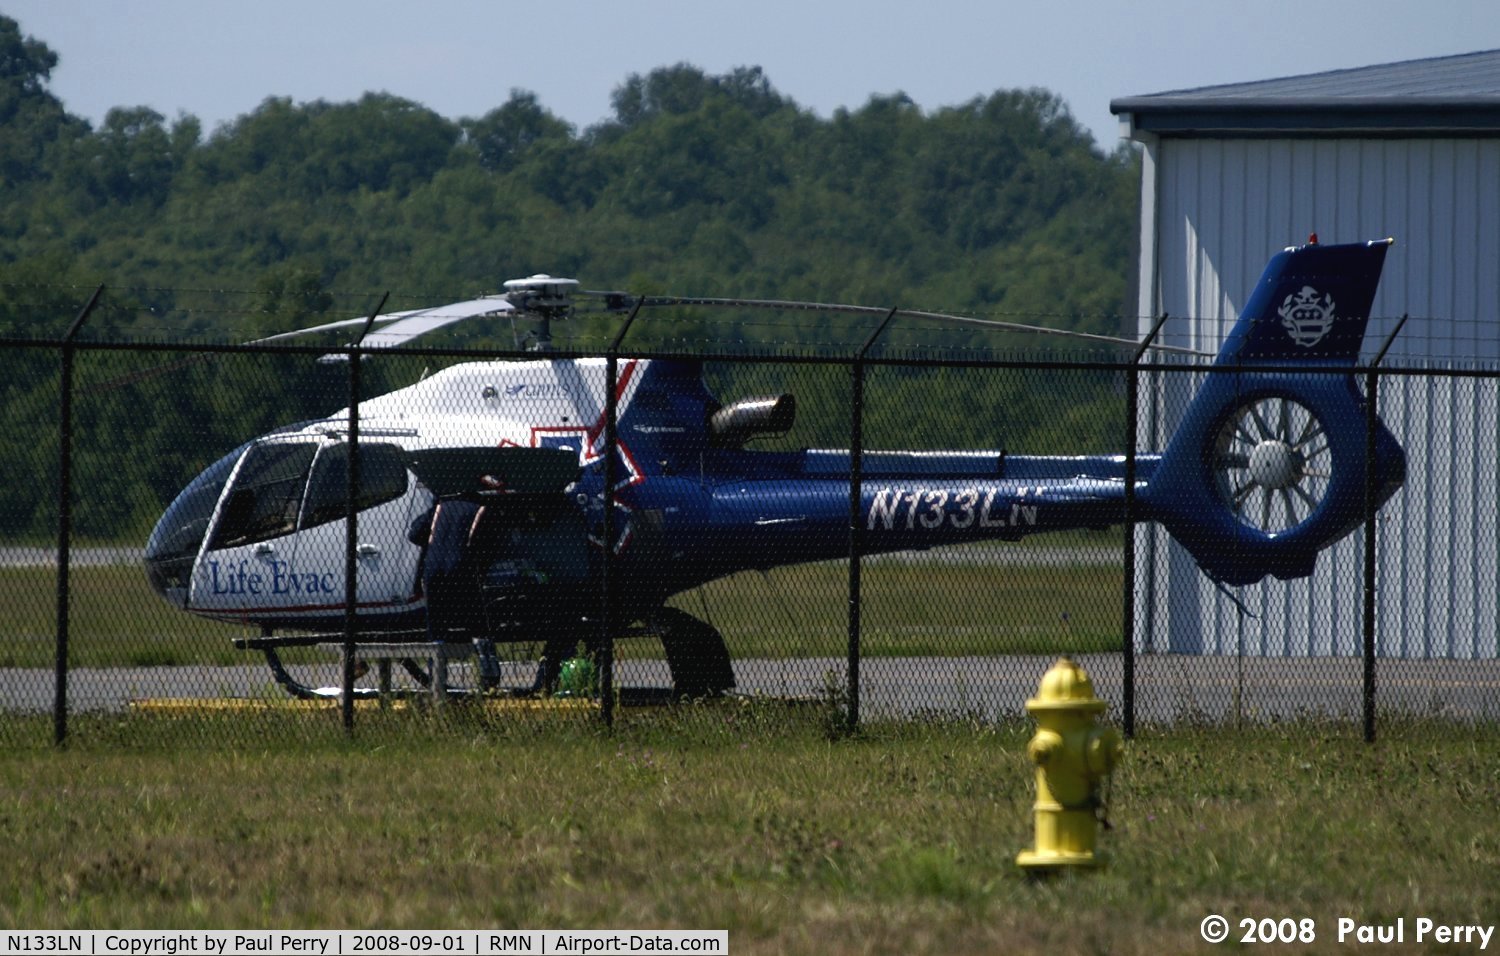 N133LN, 2005 Eurocopter EC-130B-4 (AS-350B-4) C/N 3983, Fine looking medevac helo at her home roost